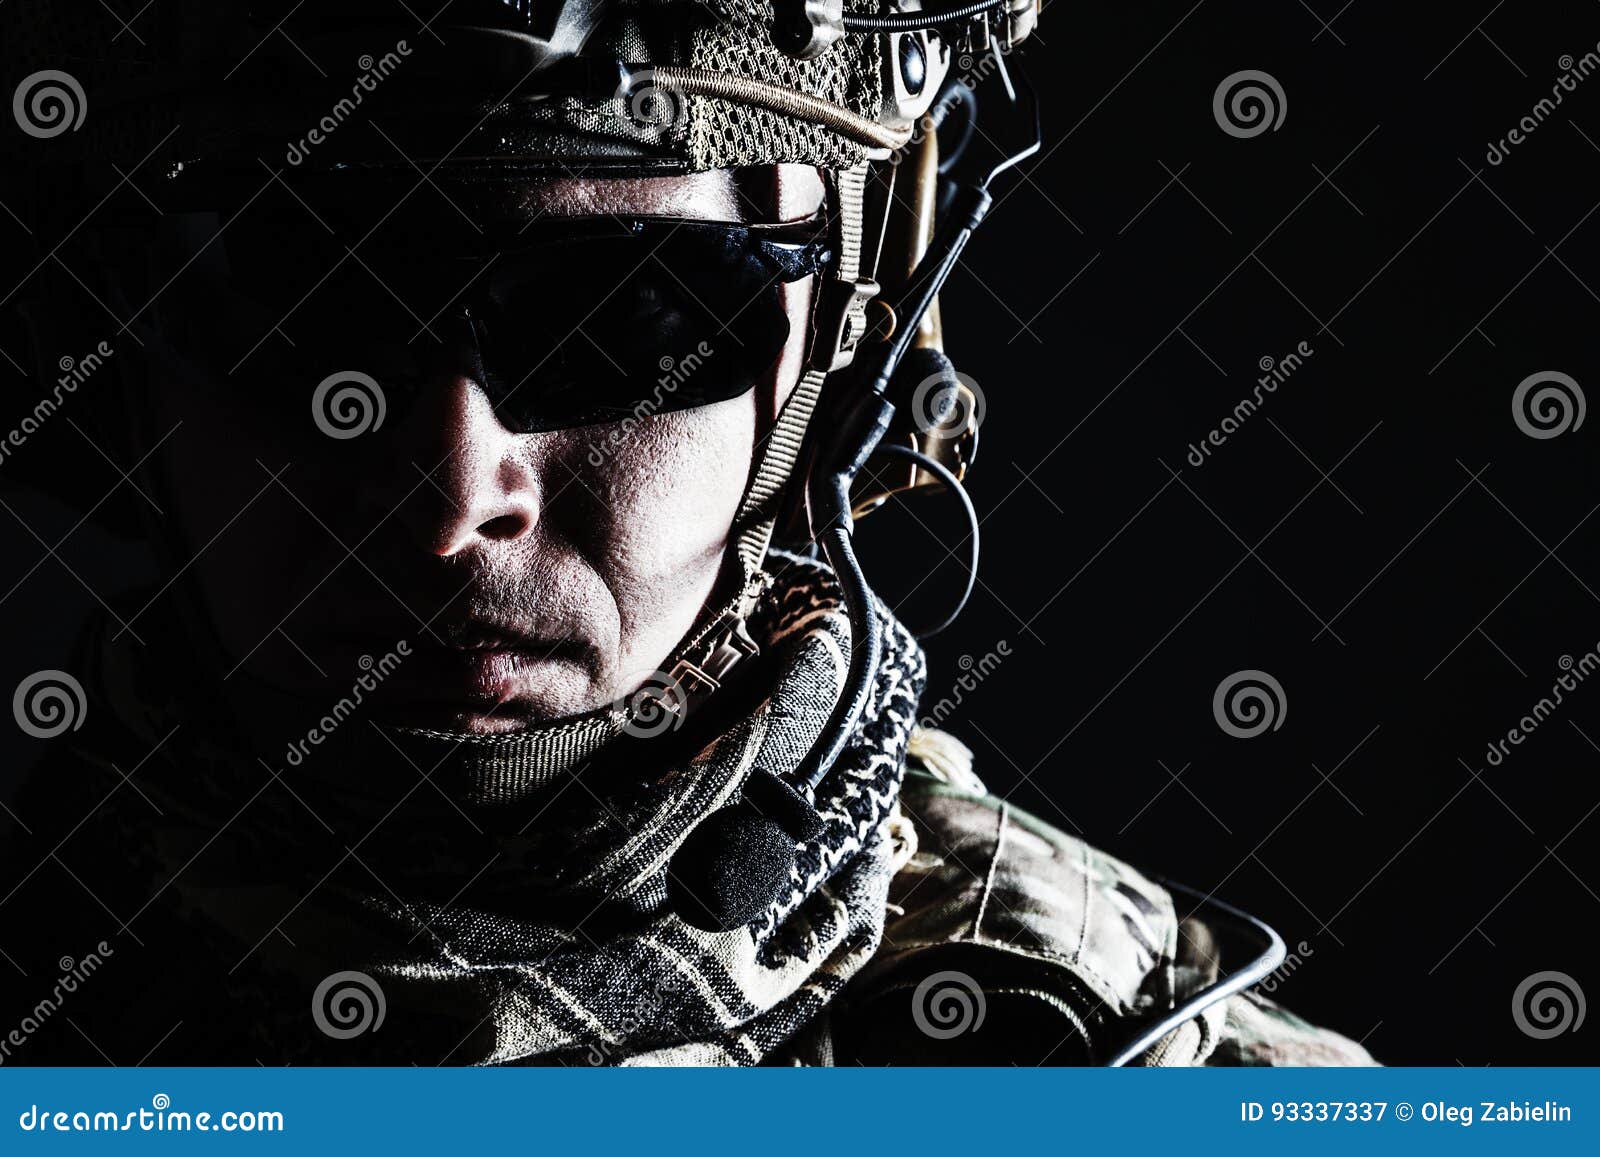 us army ranger close-up